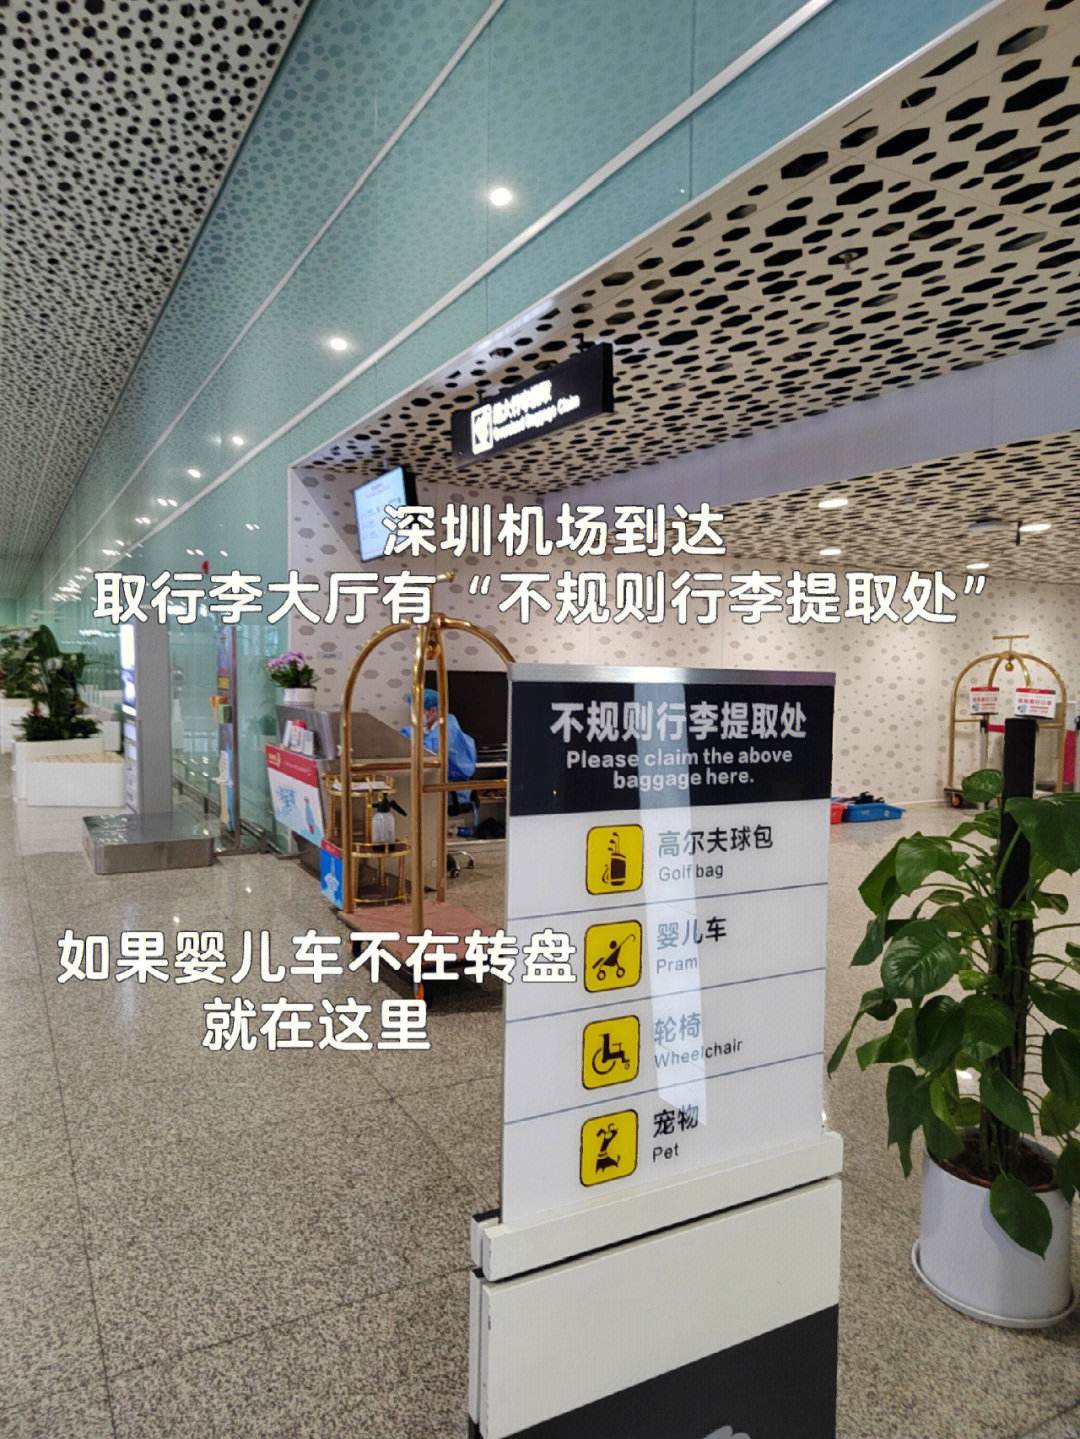 东莞到深圳机场怎么叫滴滴快车，东莞到深圳机场怎么叫滴滴快车呢